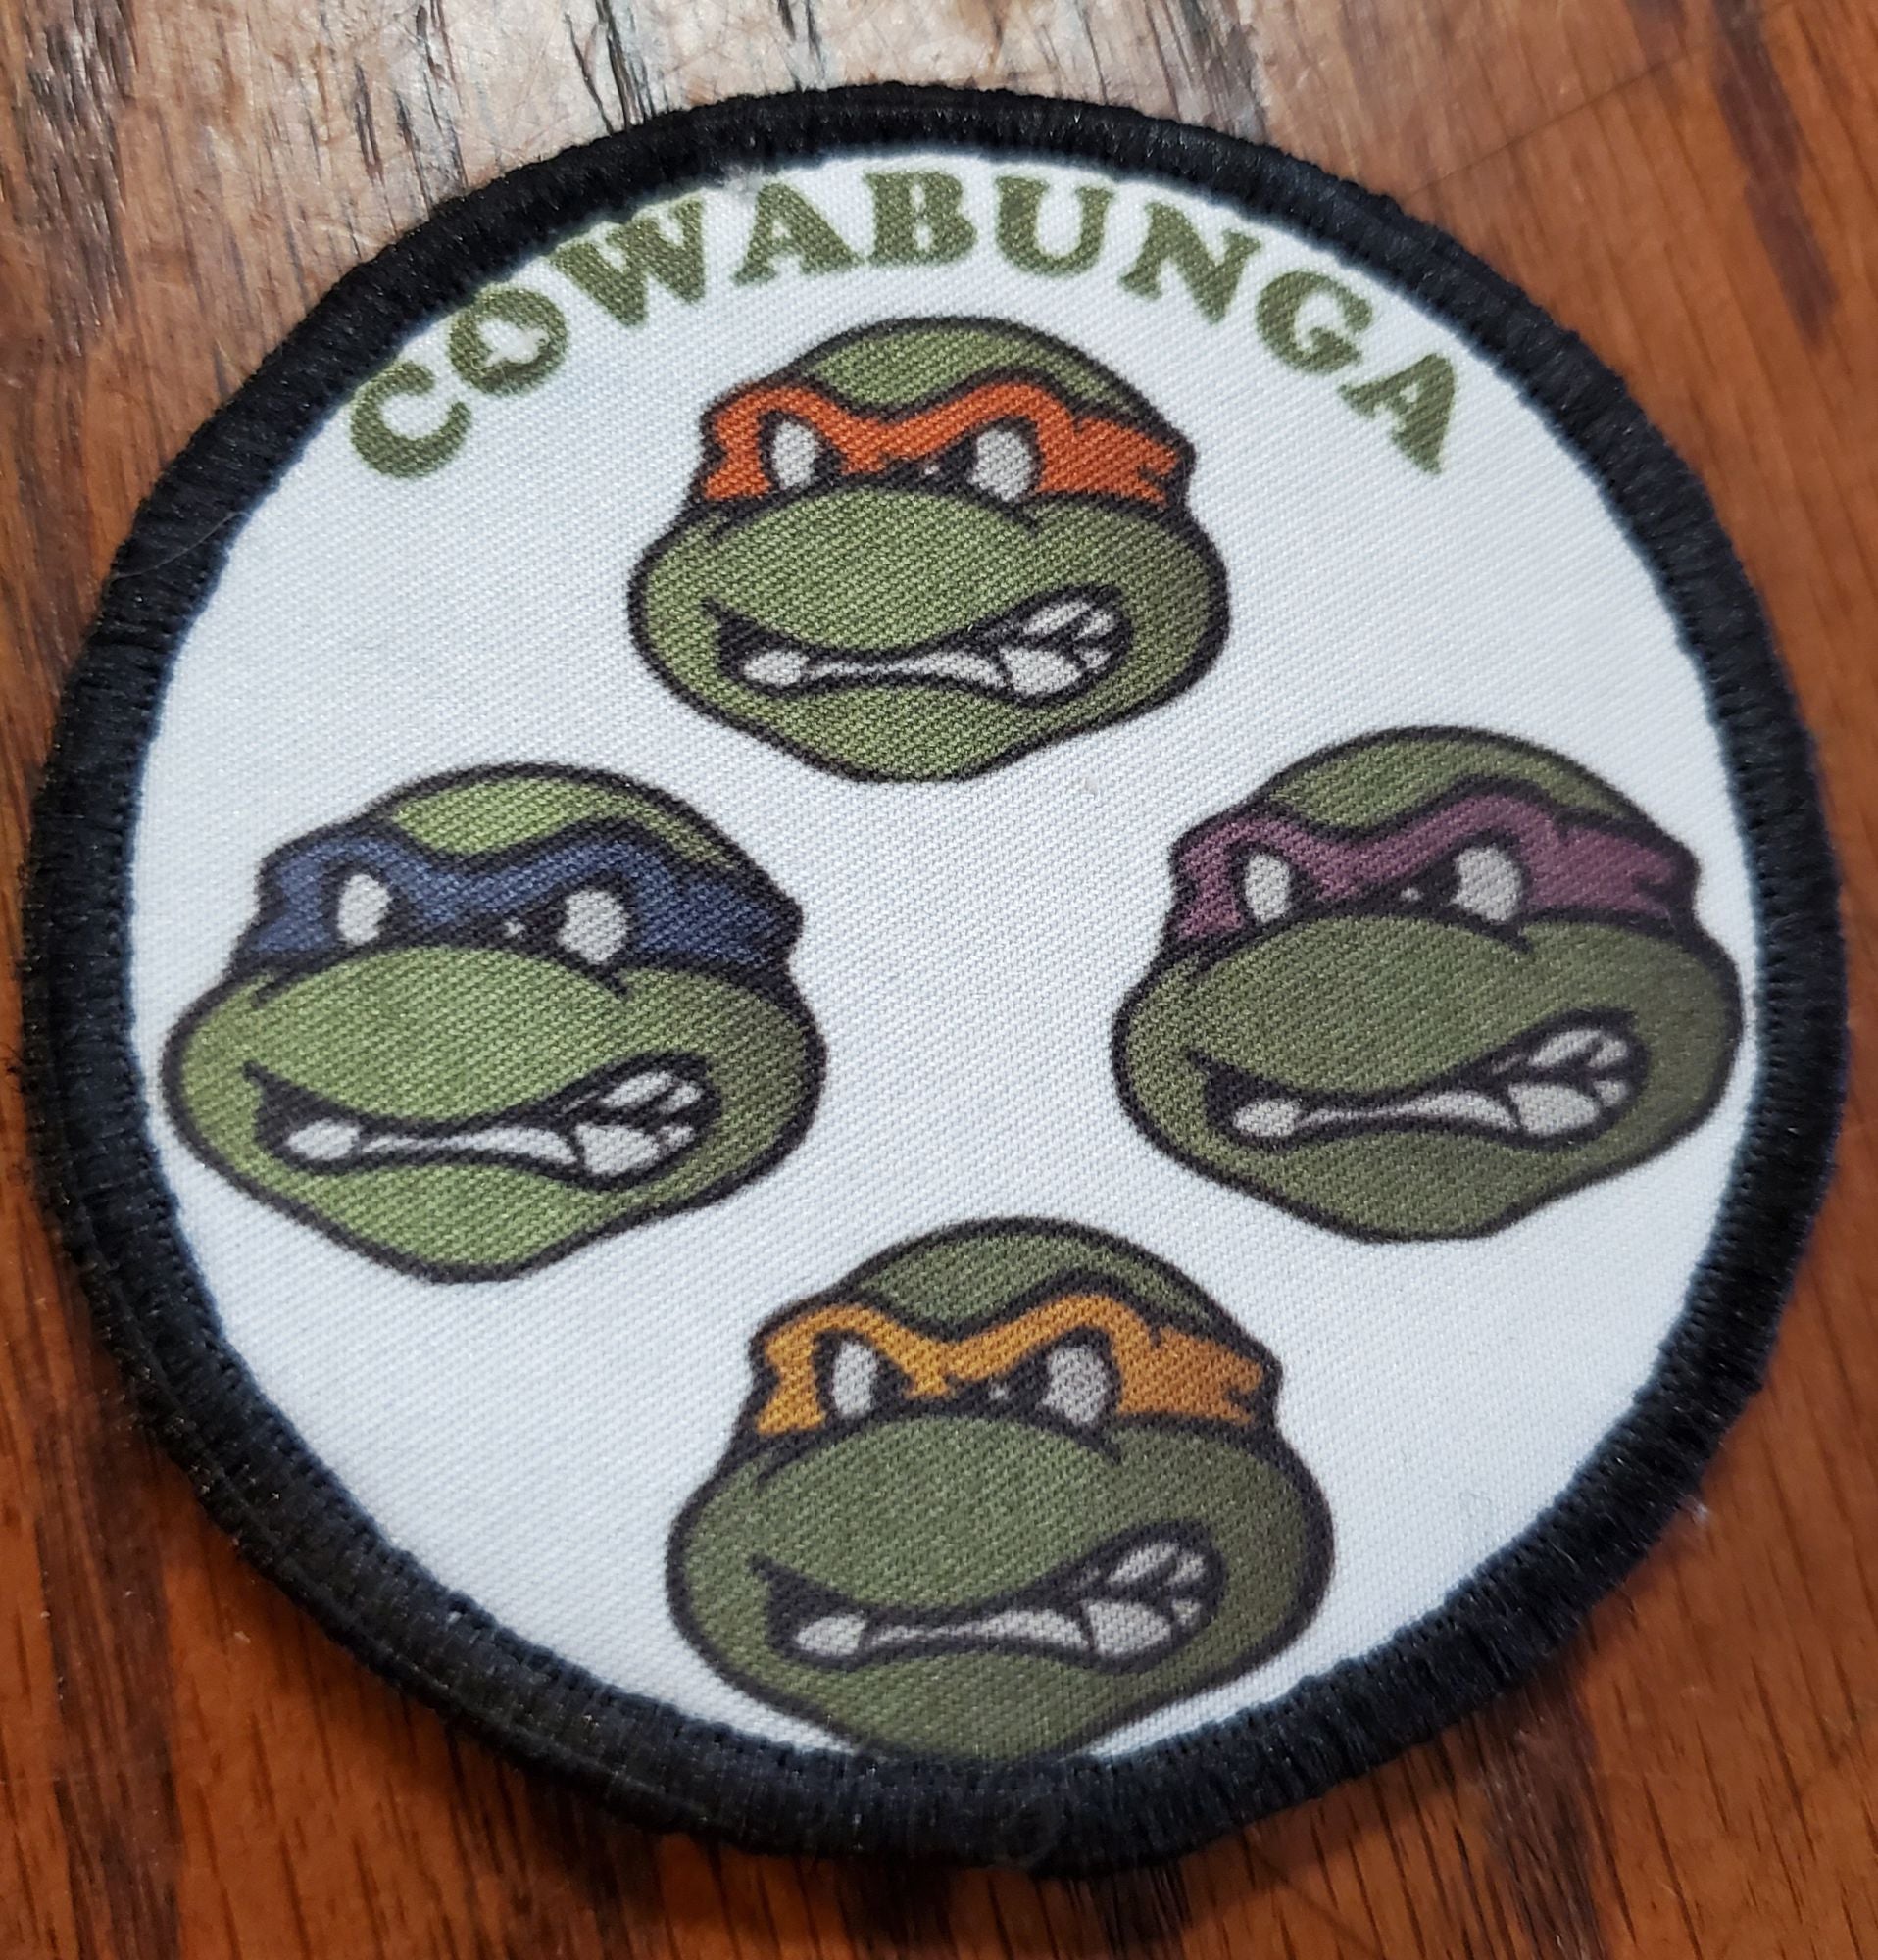 Cowabunga Teenage Mutant Ninja Turtles Custom Velcro Morale Patch